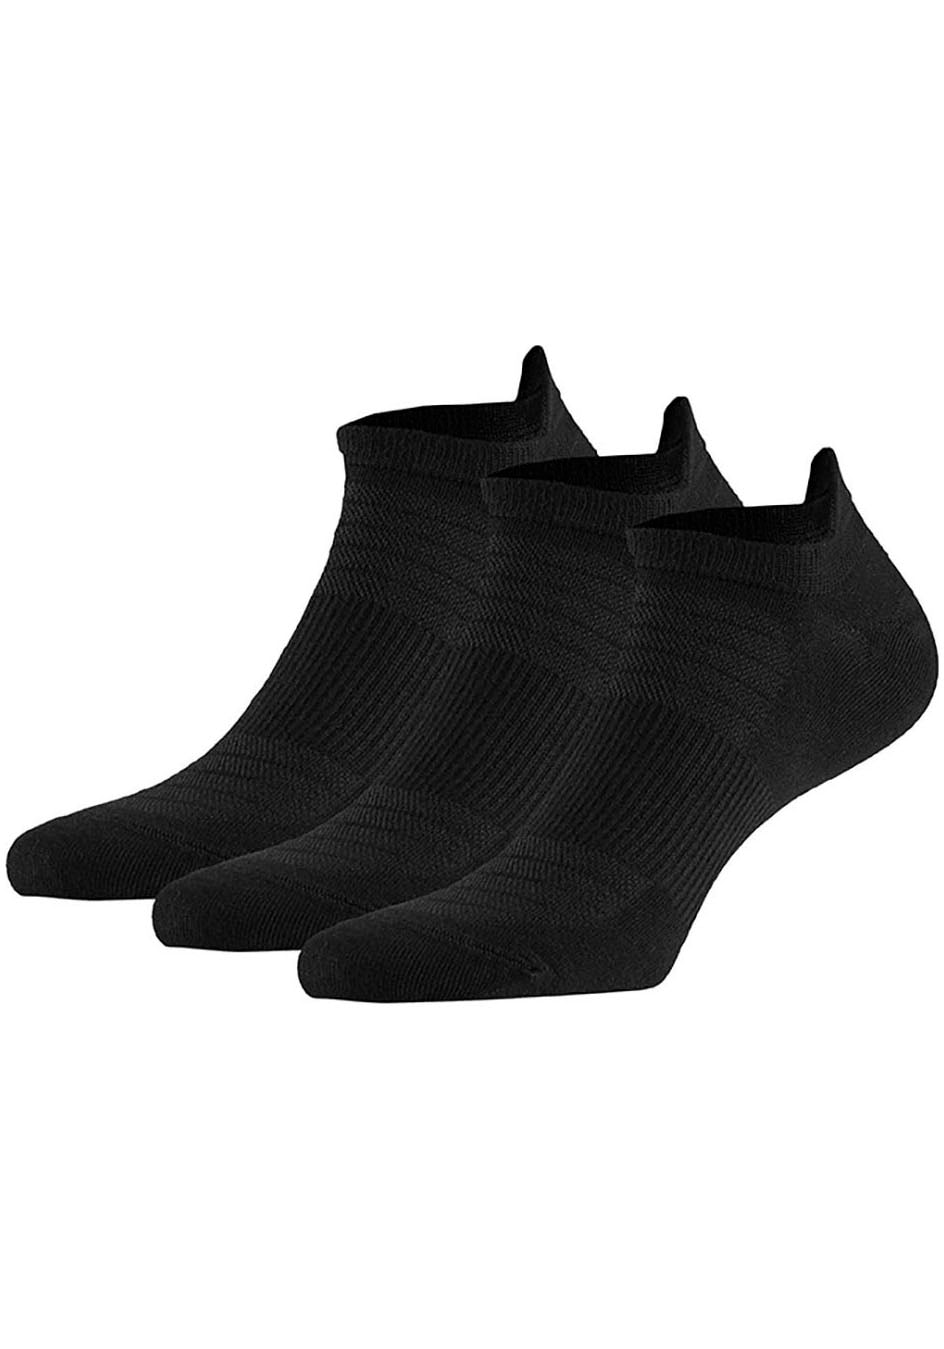 XTREME sockswear Füßlinge, (6 Paar)